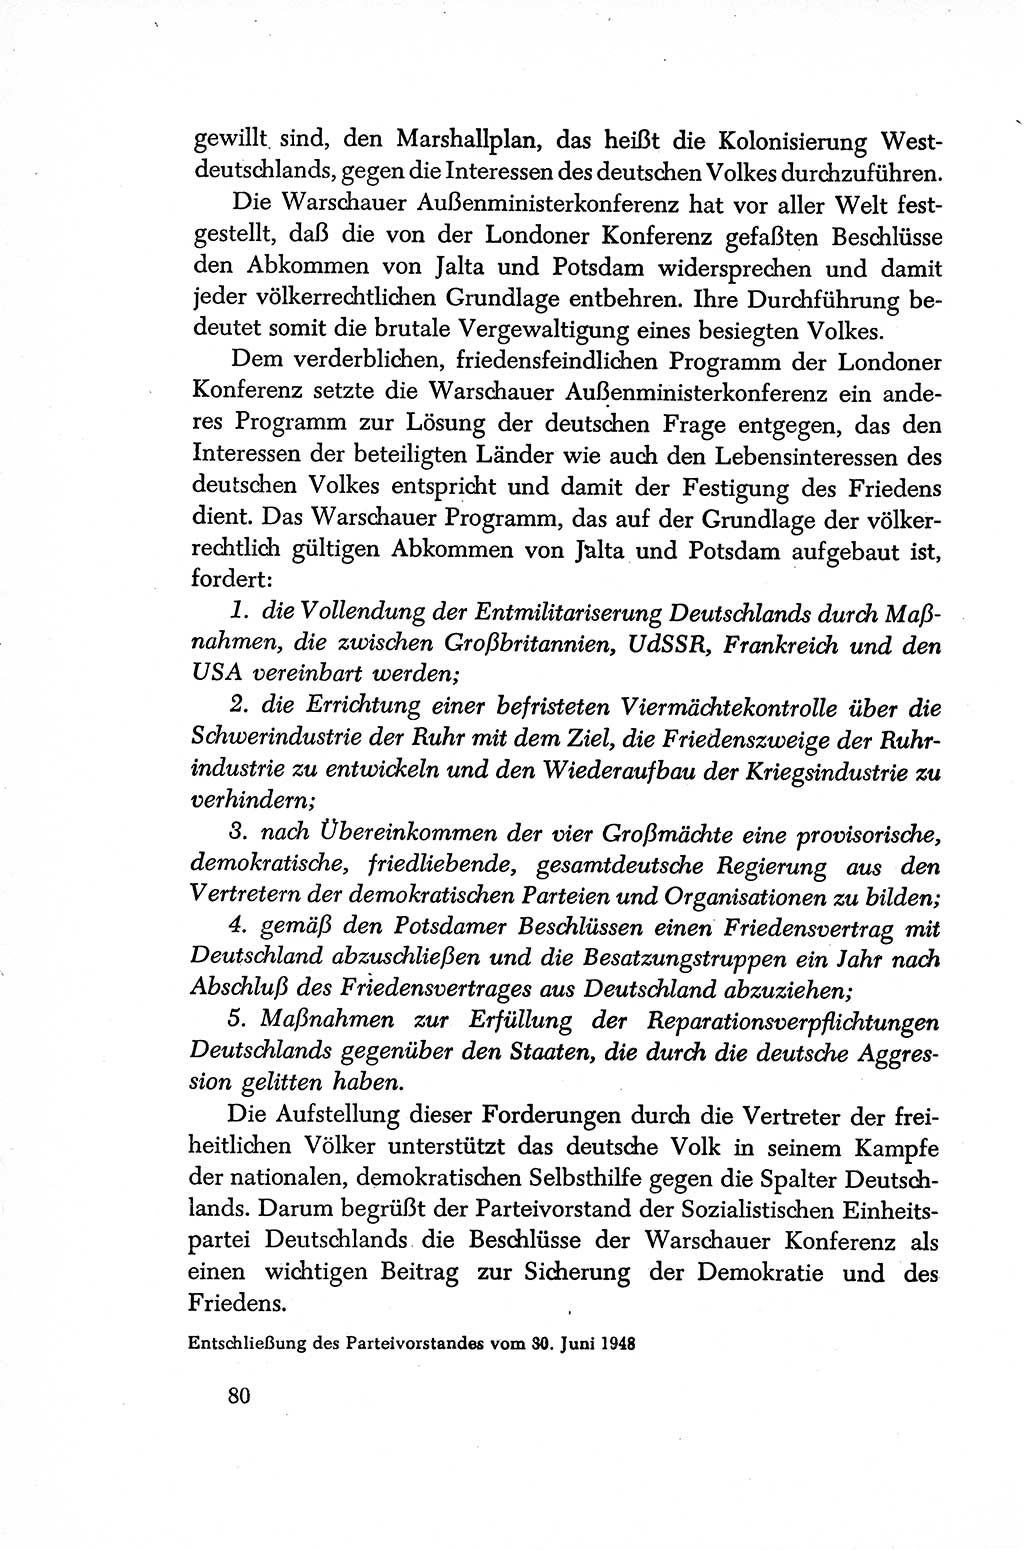 Dokumente der Sozialistischen Einheitspartei Deutschlands (SED) [Sowjetische Besatzungszone (SBZ) Deutschlands/Deutsche Demokratische Republik (DDR)] 1948-1950, Seite 80 (Dok. SED SBZ Dtl. DDR 1948-1950, S. 80)